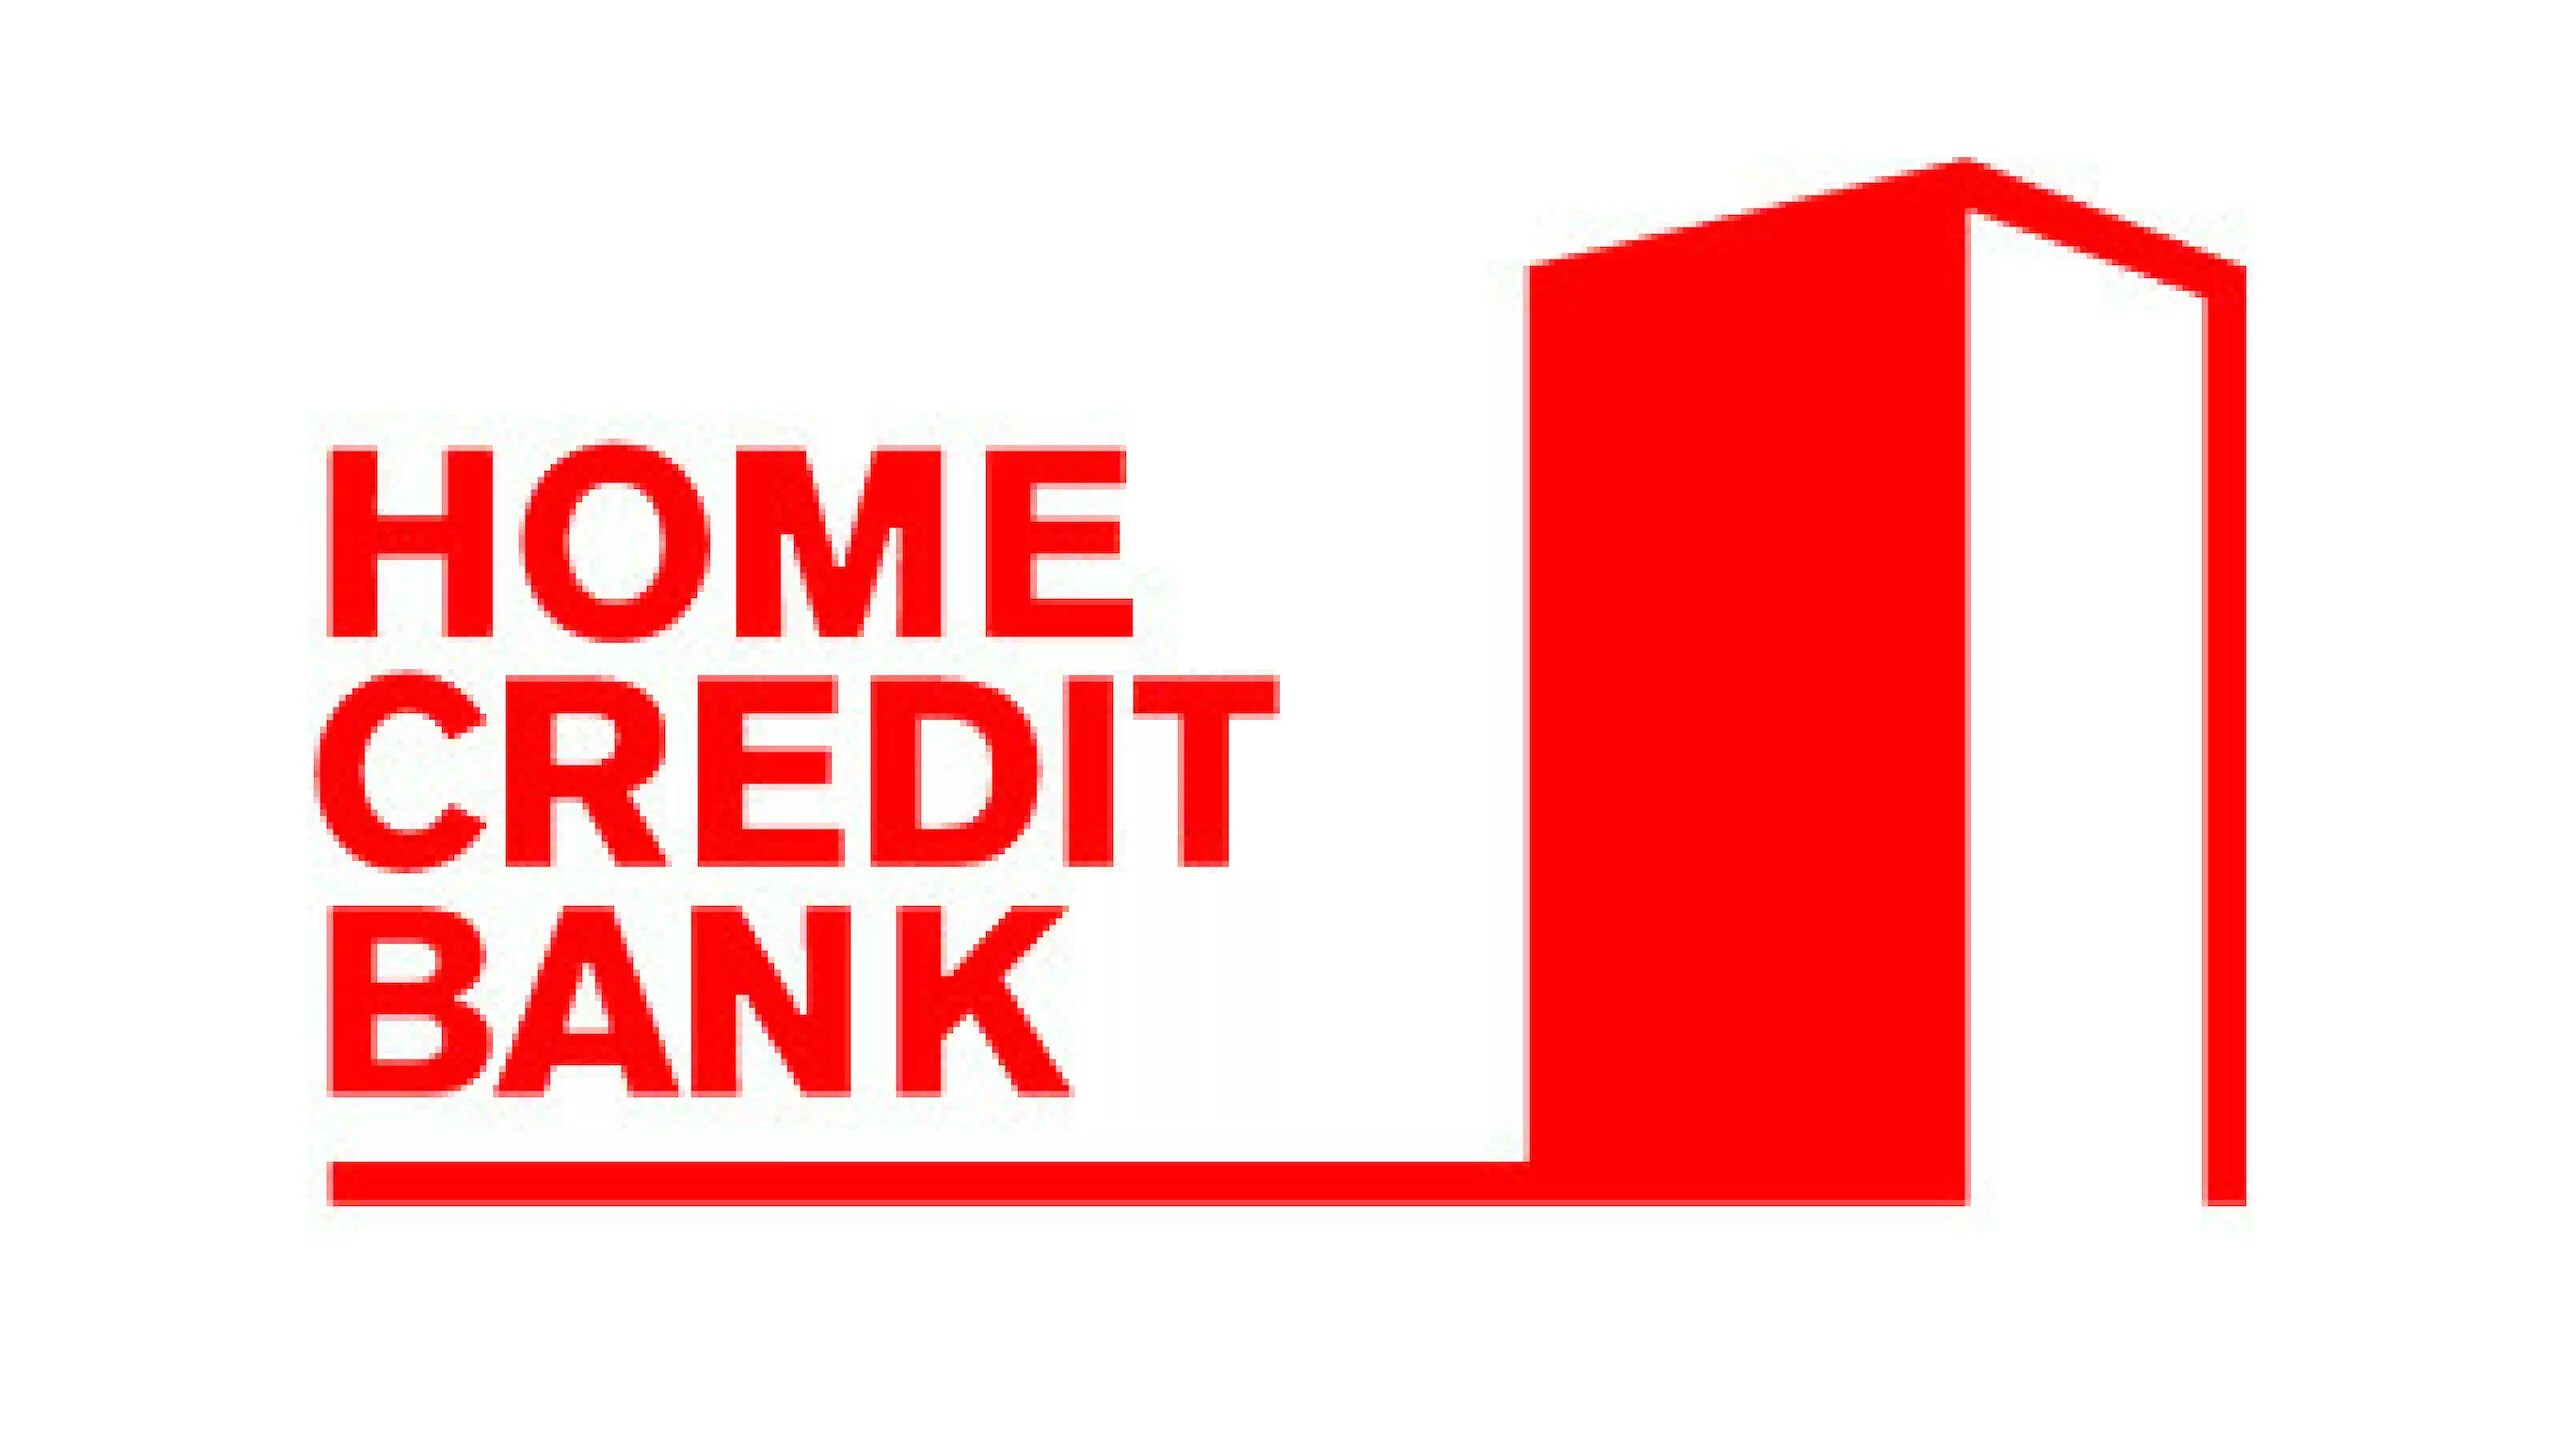 Хоме кредит сайт. Банк Home credit. Хоум кредит логотип. Логотип Home credit банка. Home credit Bank логотип без фона.